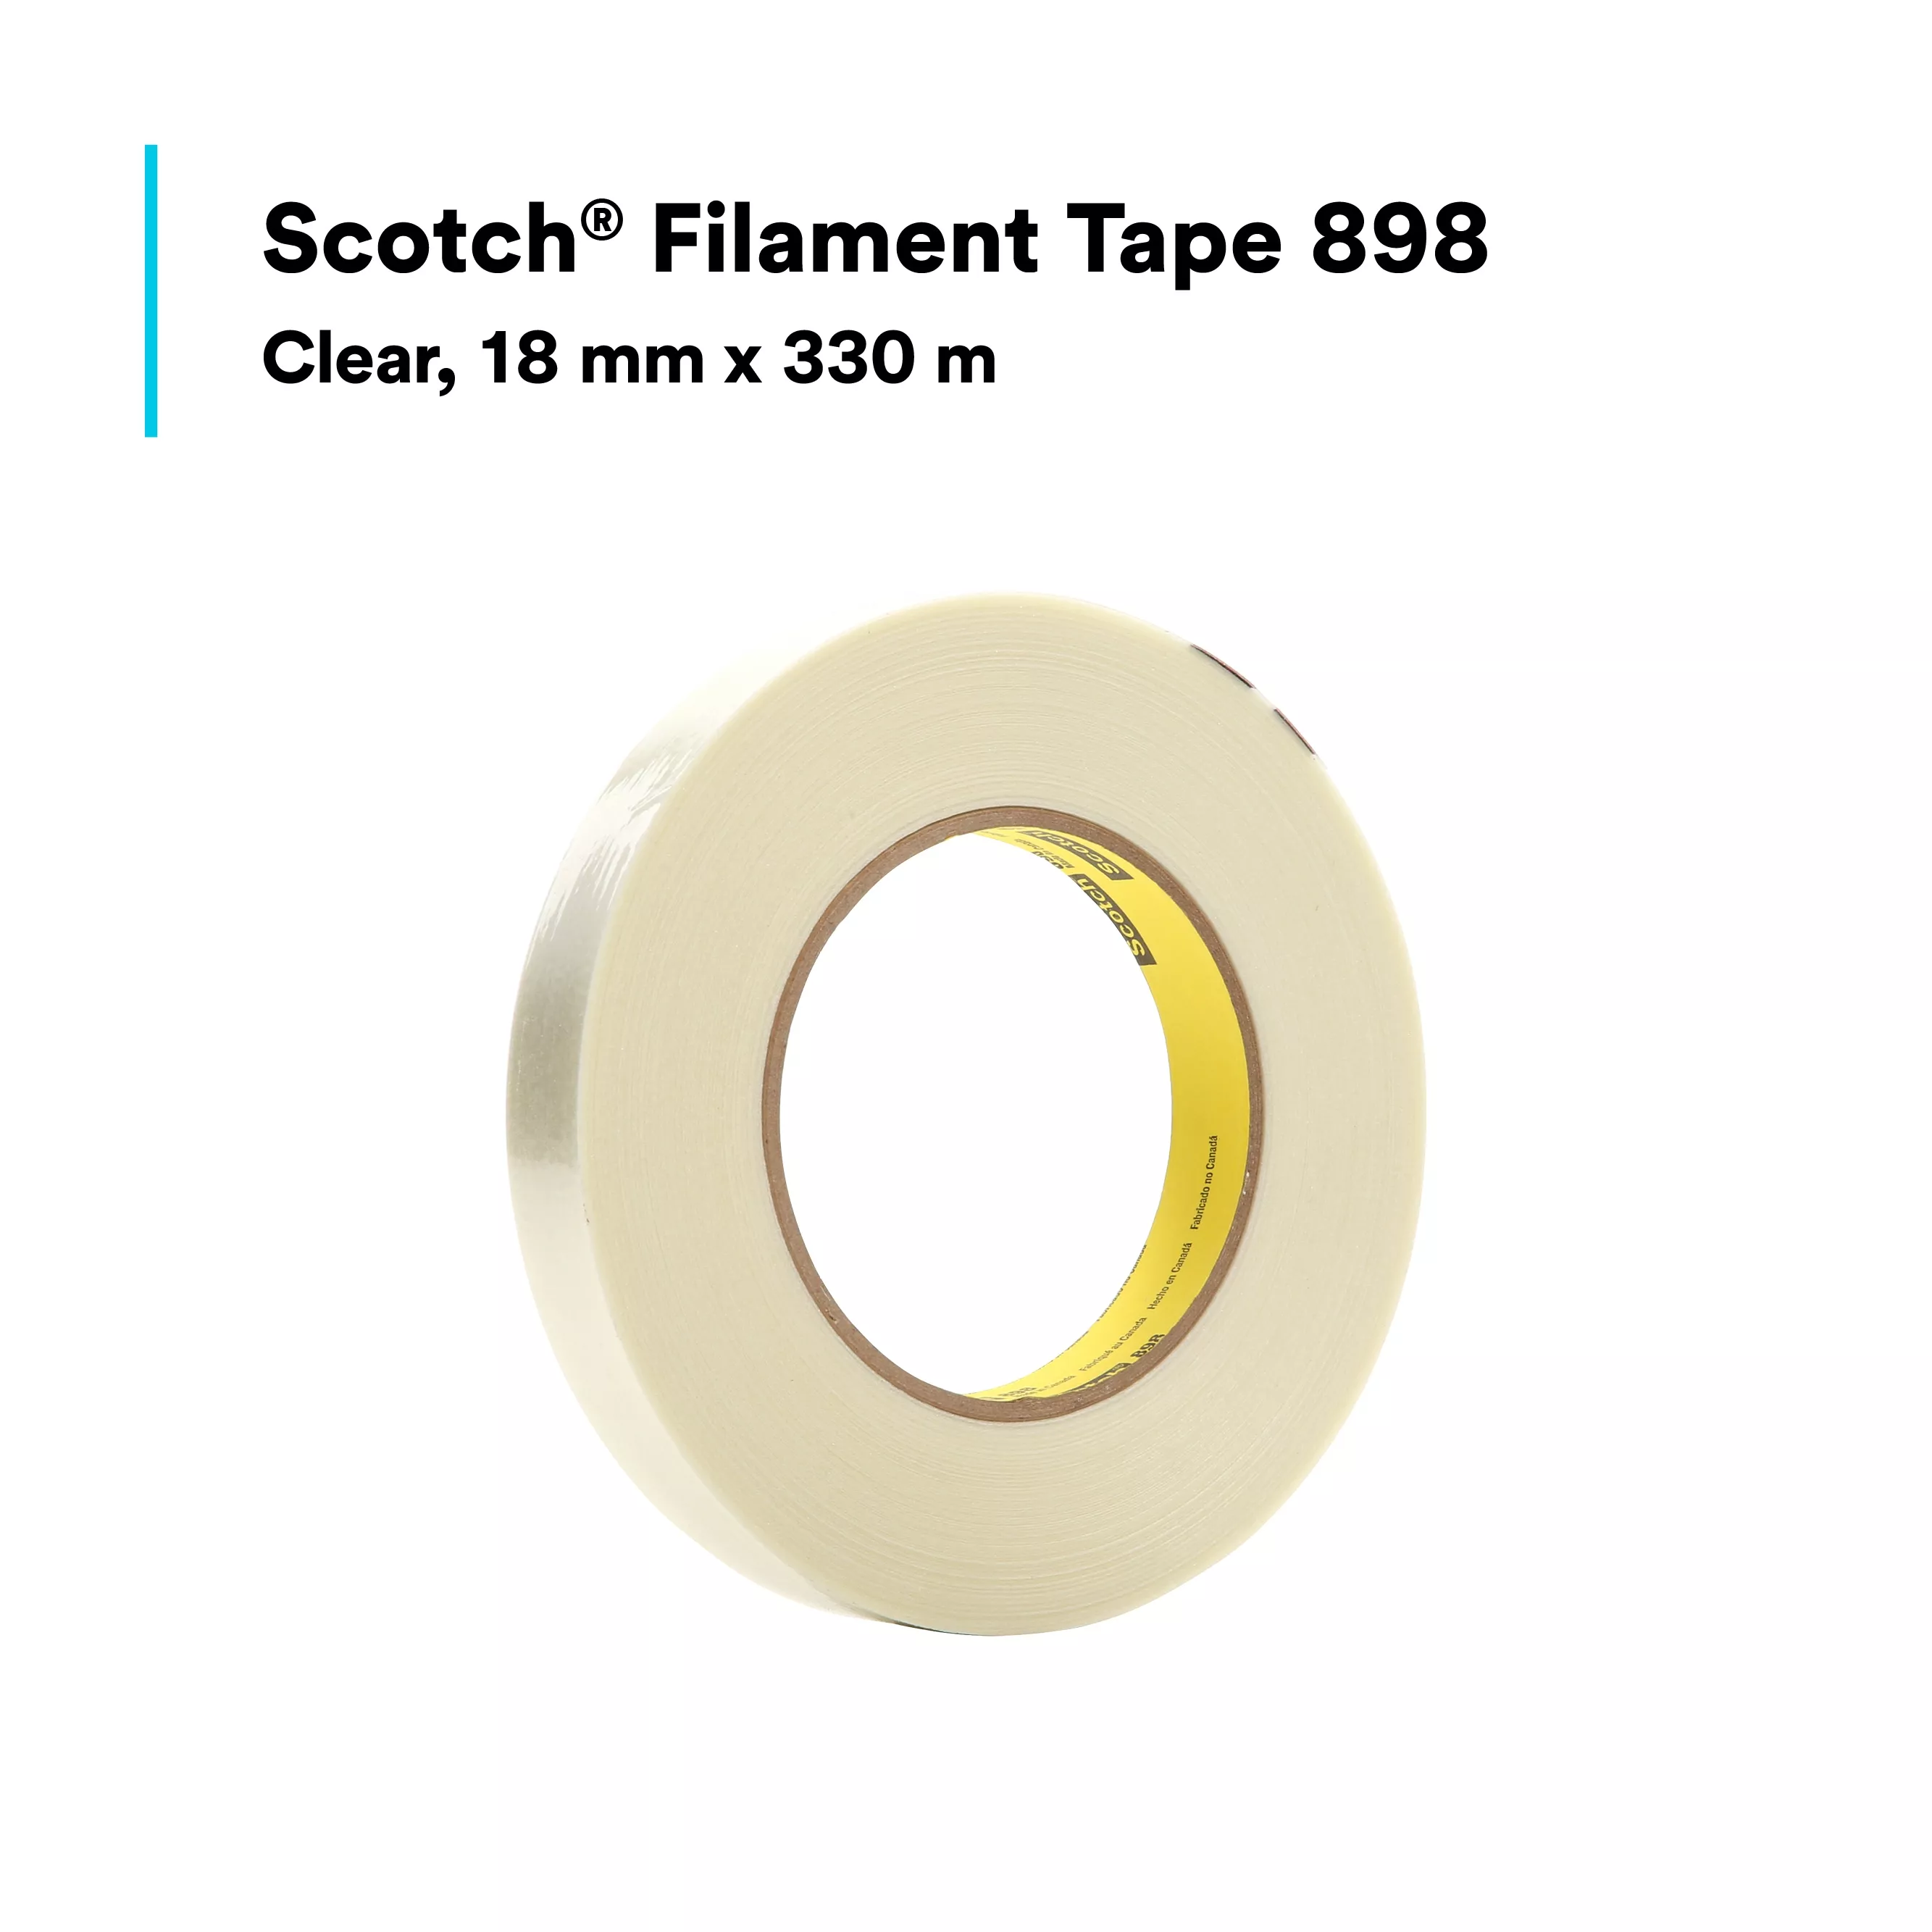 SKU 7000123844 | Scotch® Filament Tape 898